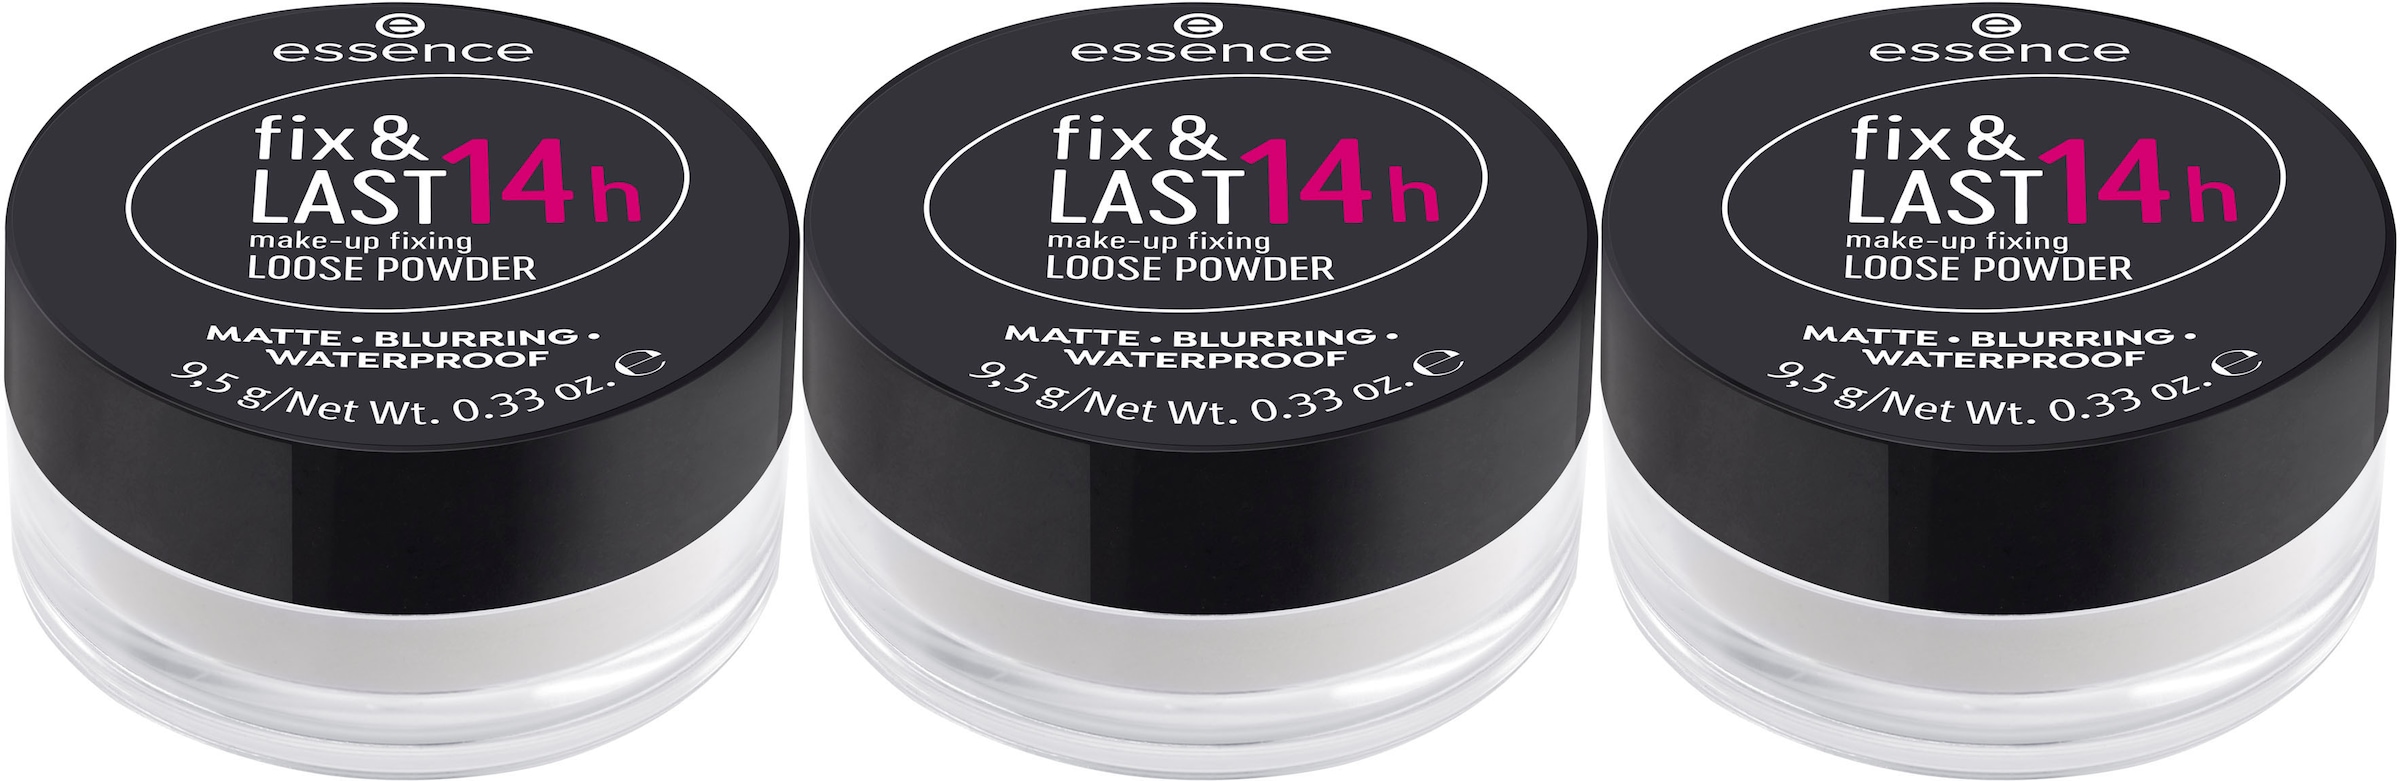 kaufen online make-up (Set, tlg.) fixing 14h »fix | & BAUR 3 LAST Essence Puder POWDER«, LOOSE